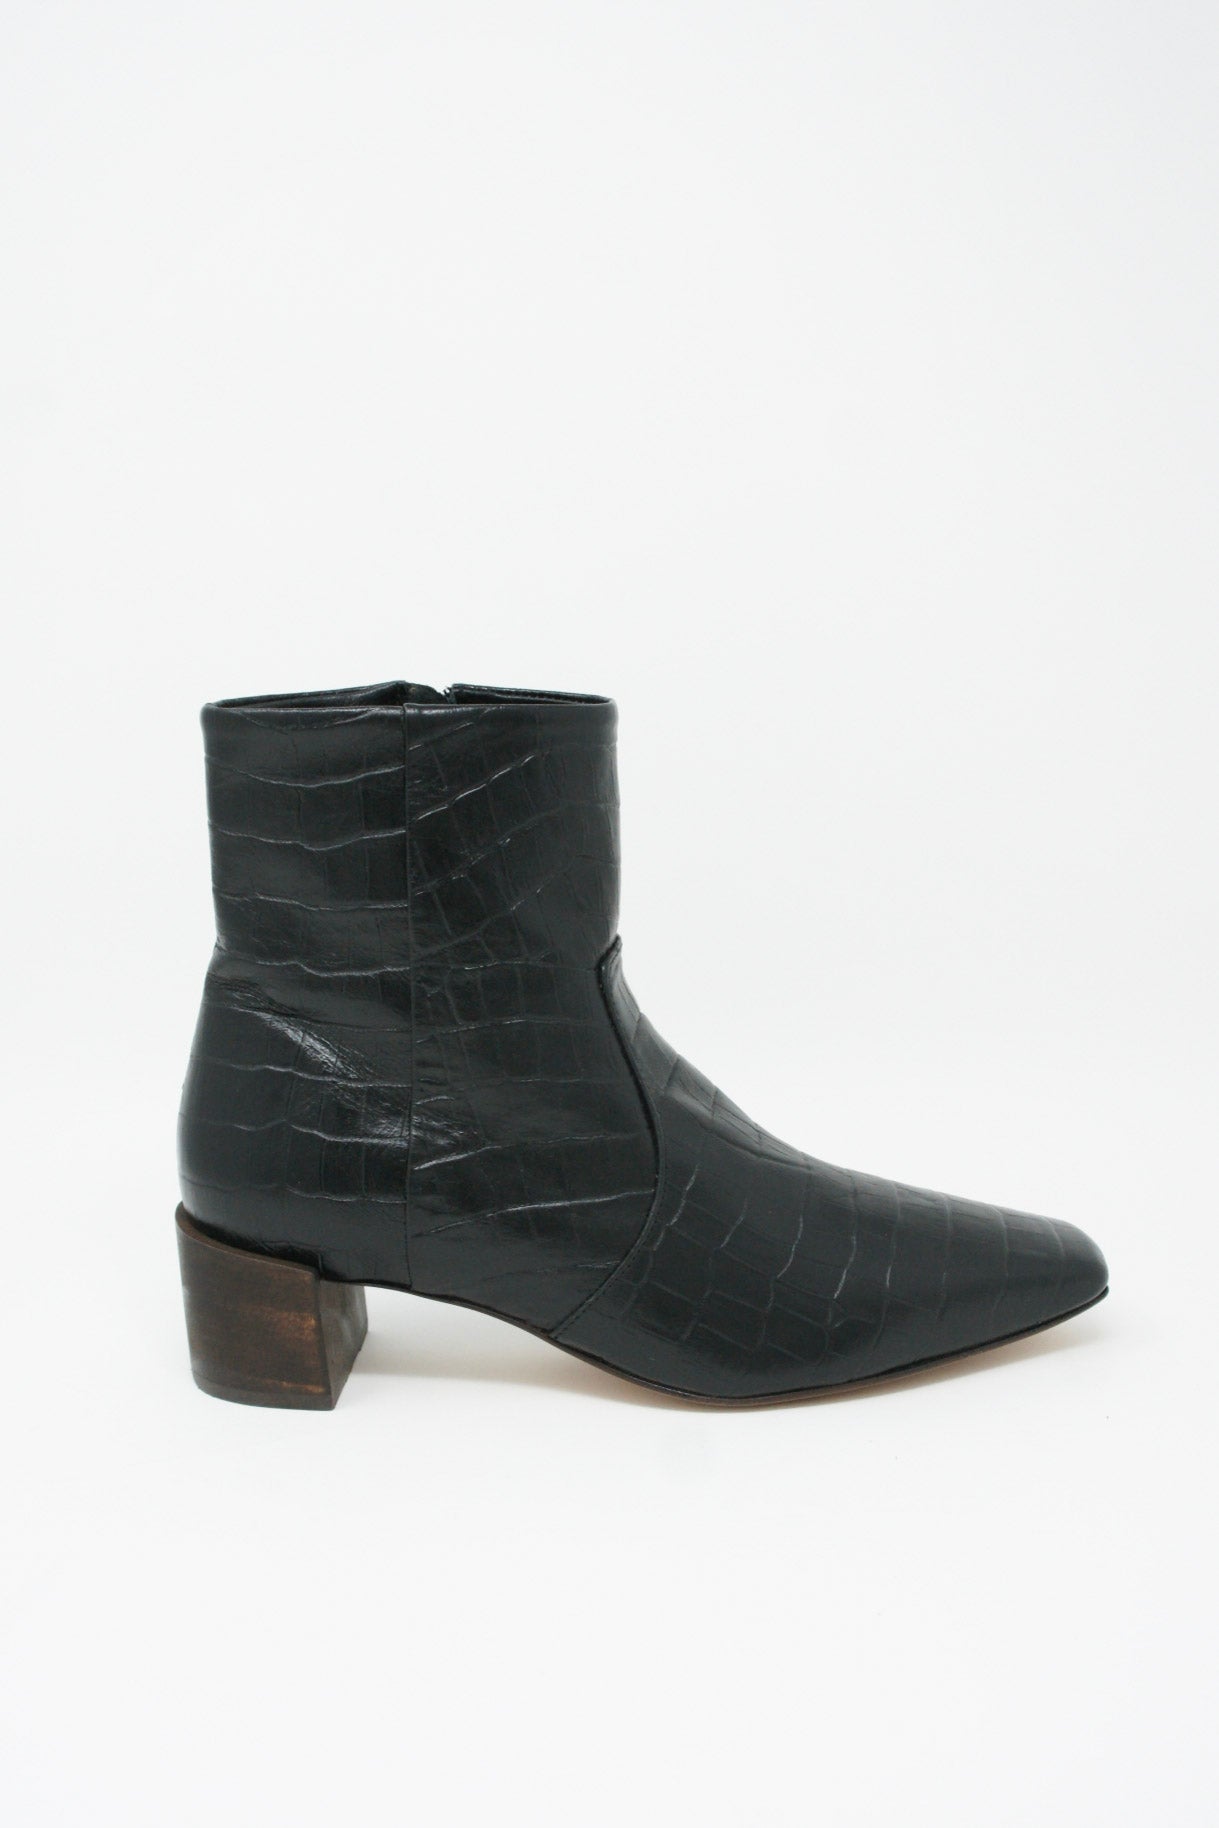 Mari Giudicelli Classic Boot in Black | Oroboro Store 